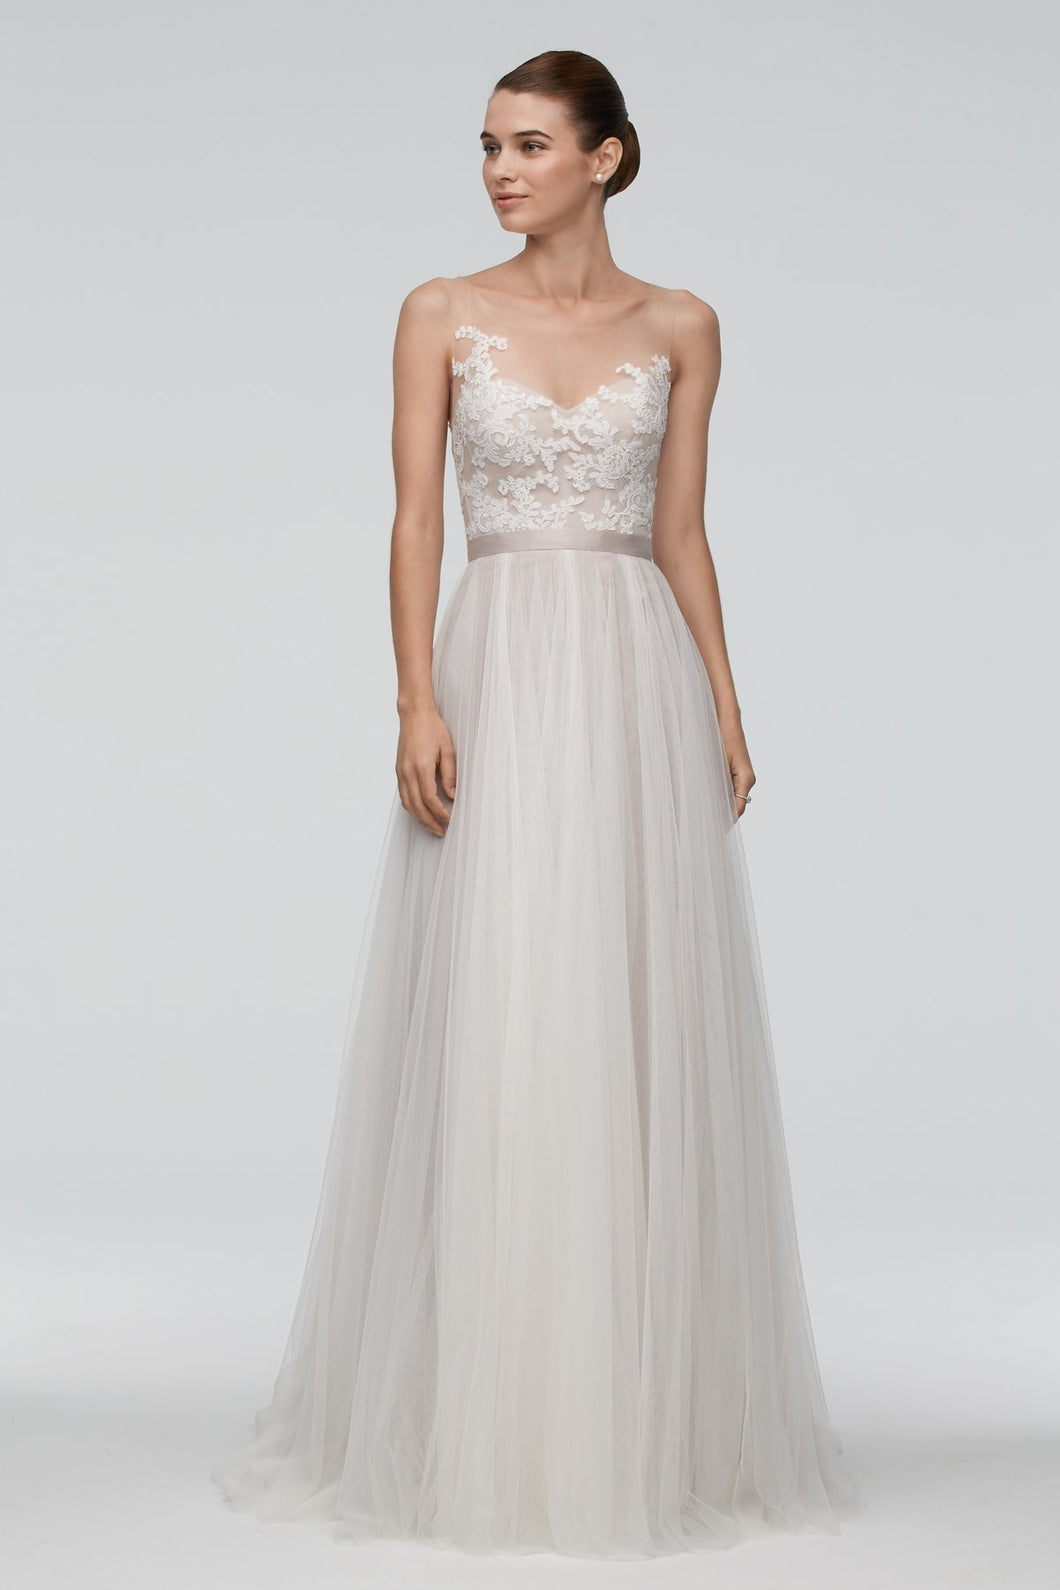 Watters 'Azriel' size 12 used wedding dress front view on model